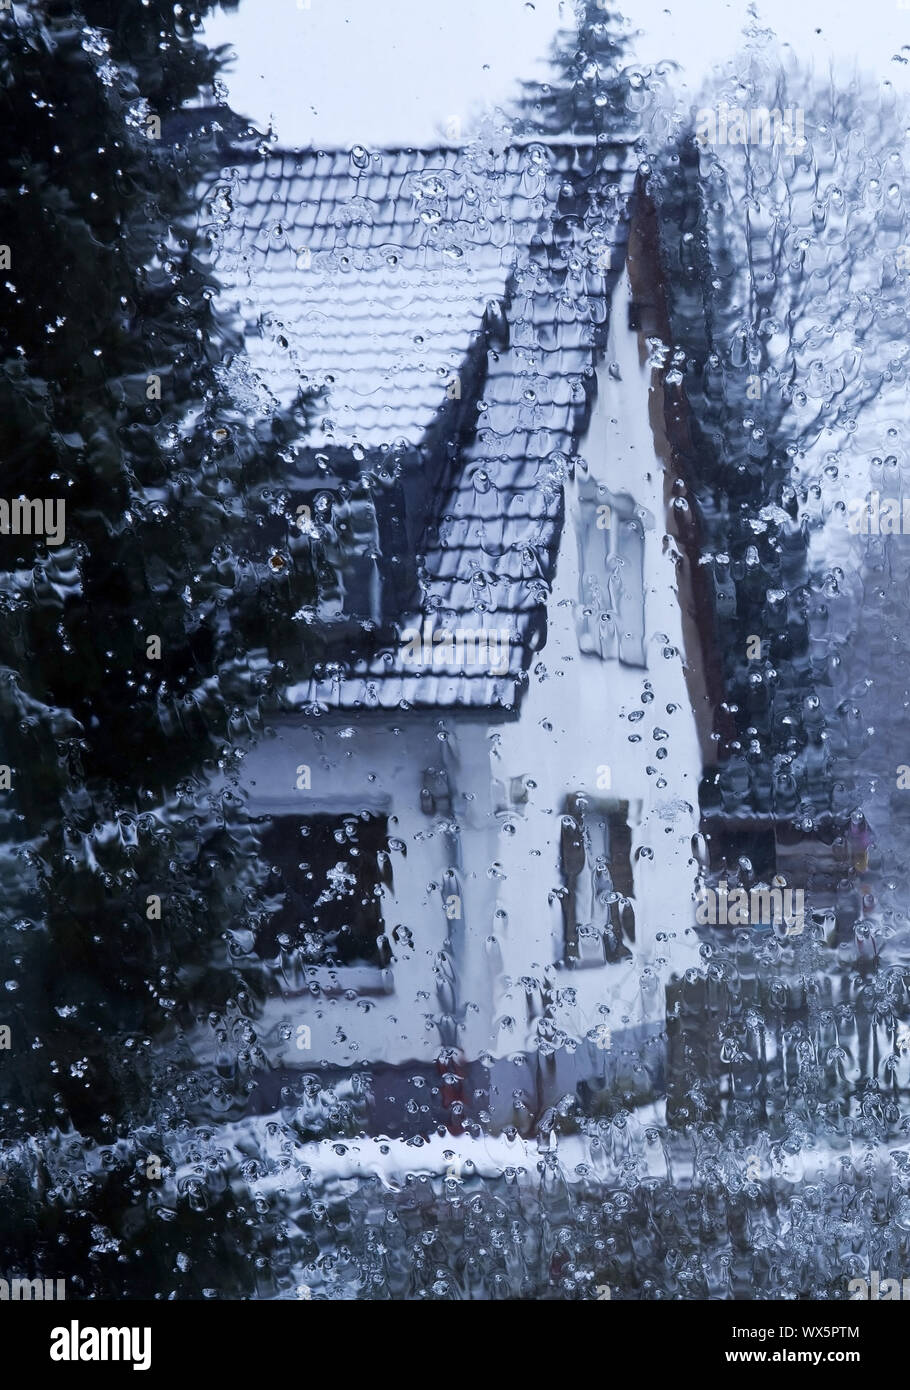 Regen auf einer Fesnsterscheibe mit Blick auf ein Haus im Winter, Witten, Nordrhein-Westfalen, Deuts Stock Photo